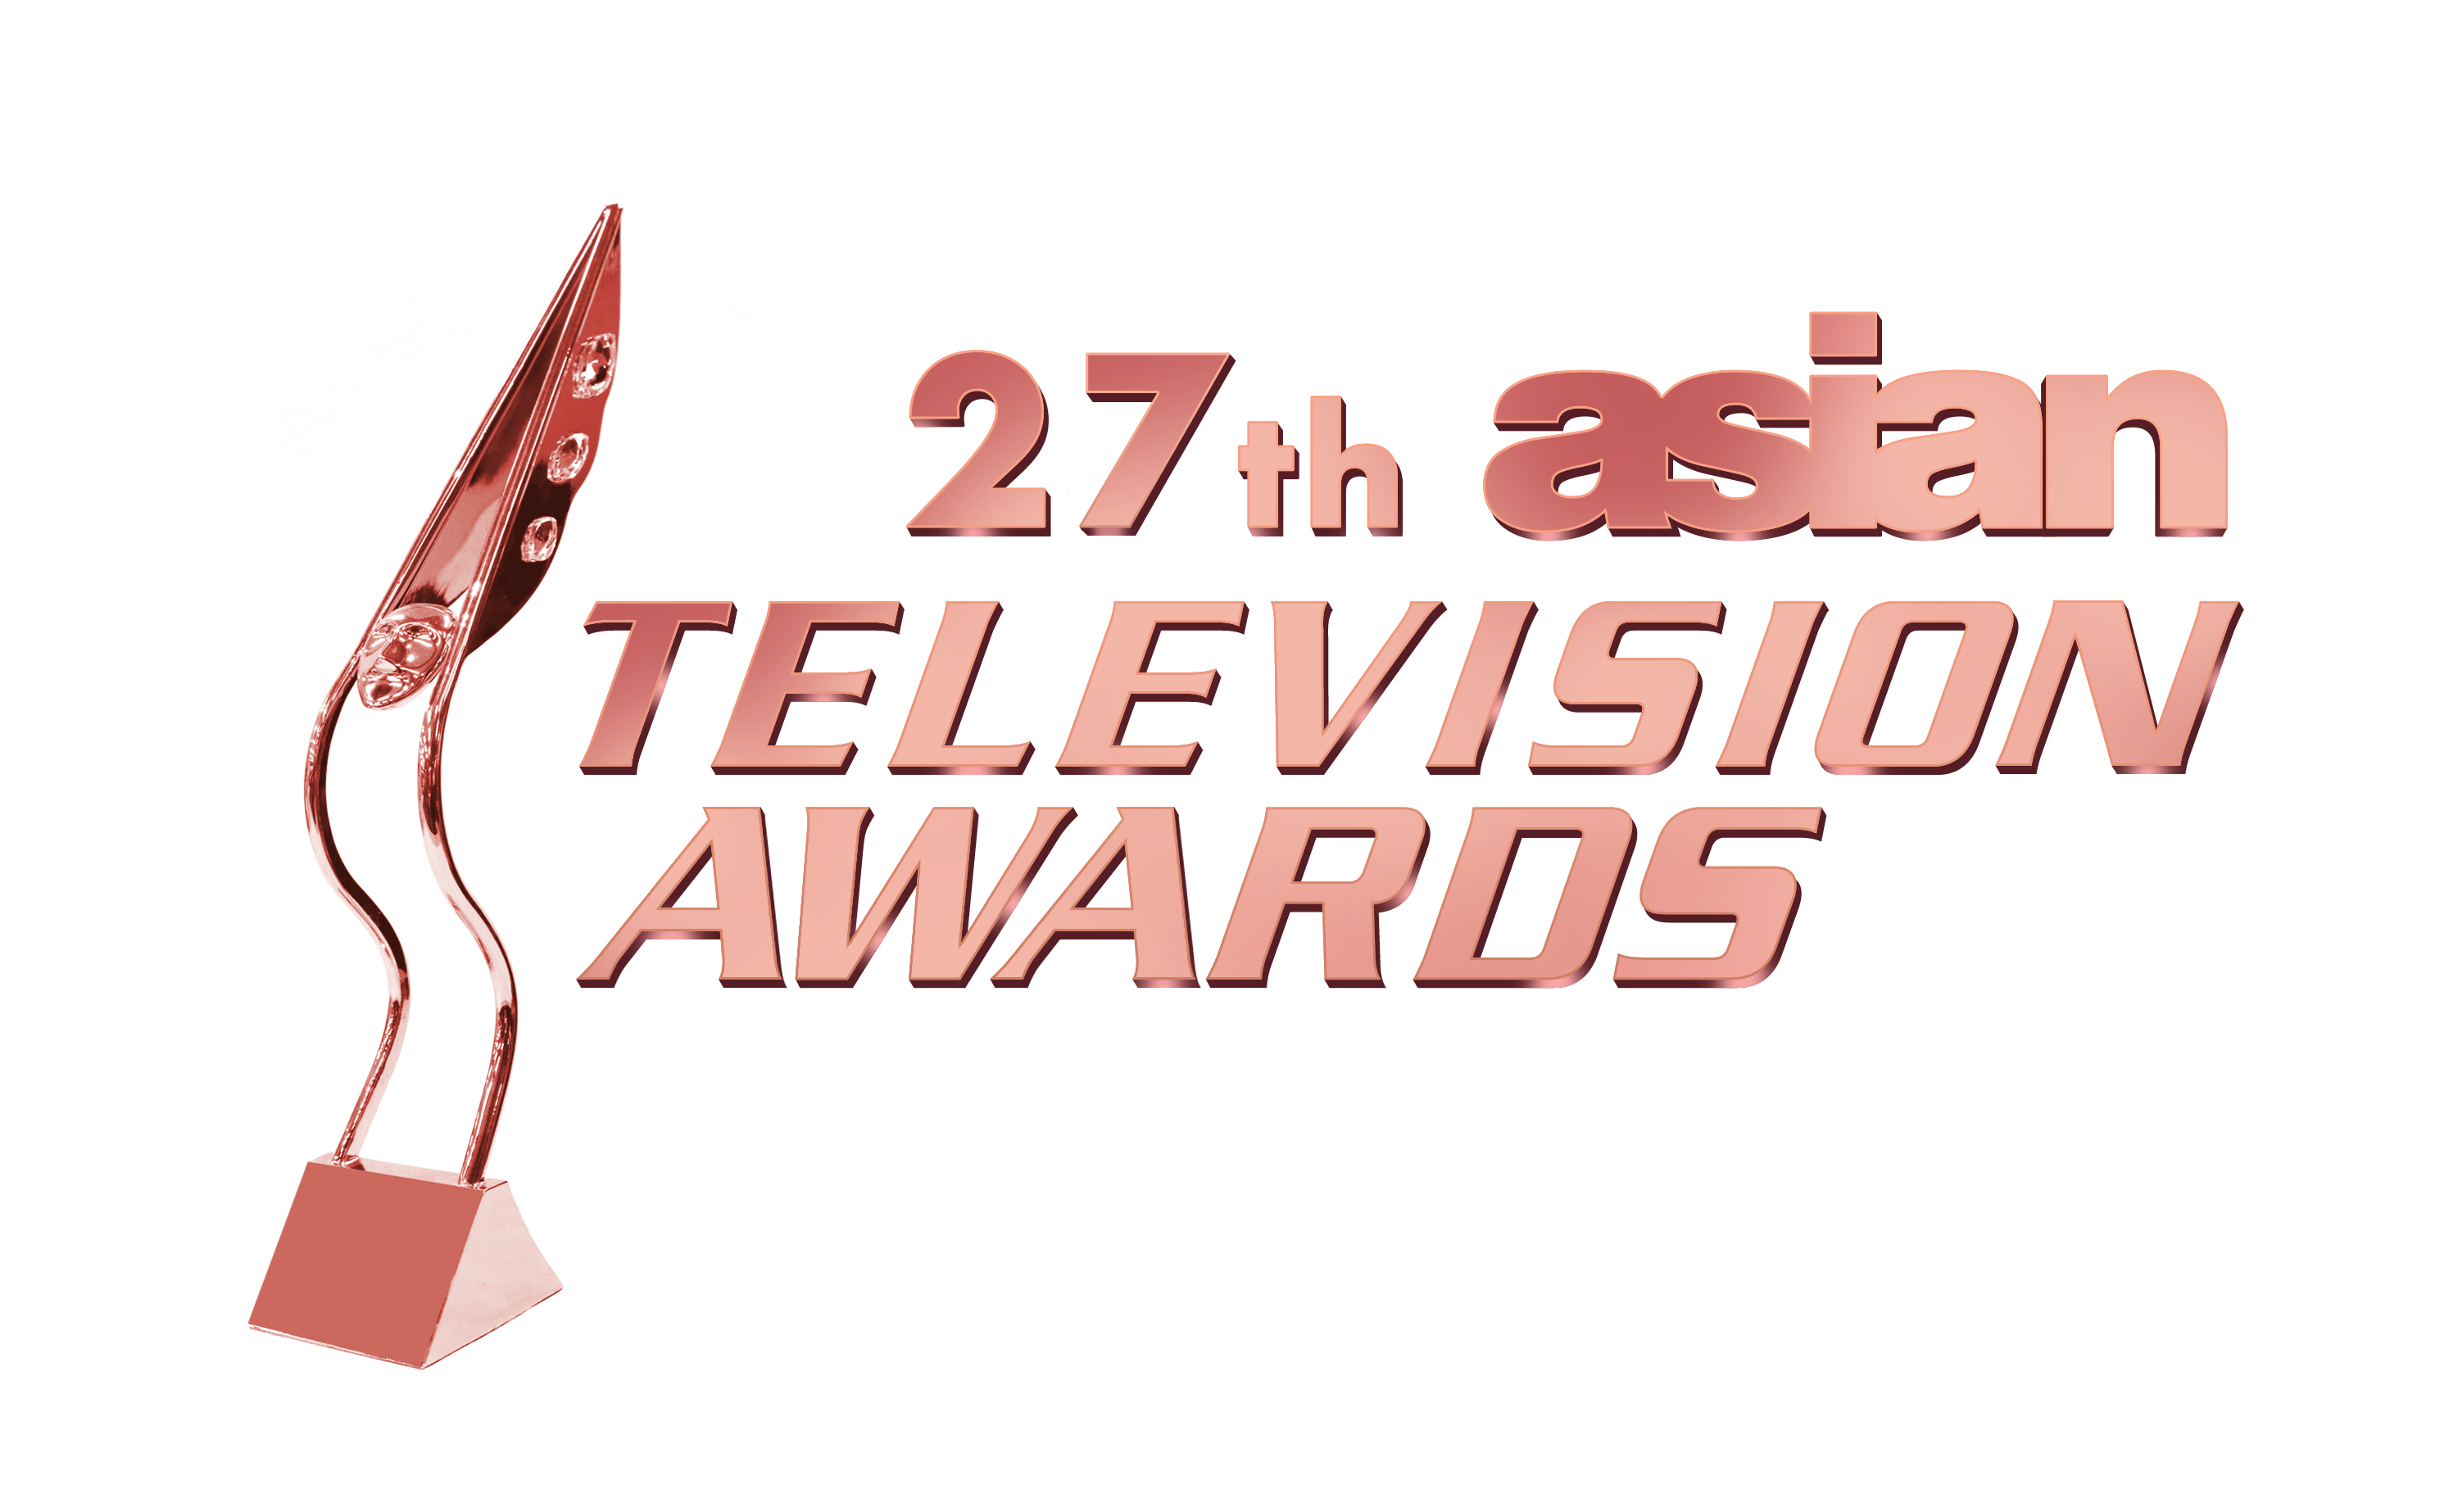 27th Asian Television Awards